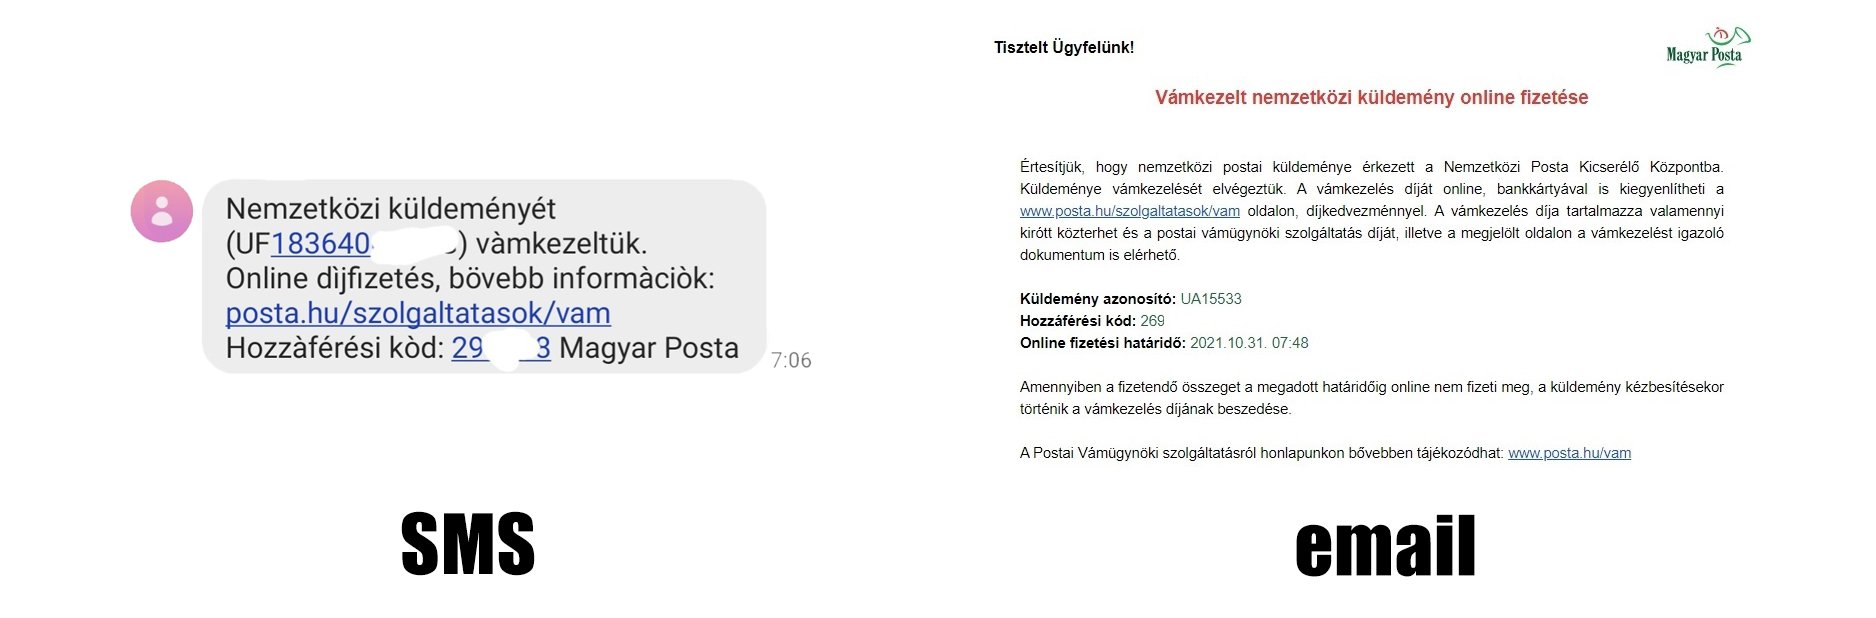 Vámügyintézés menete Magyar Posta csomag esetén 2